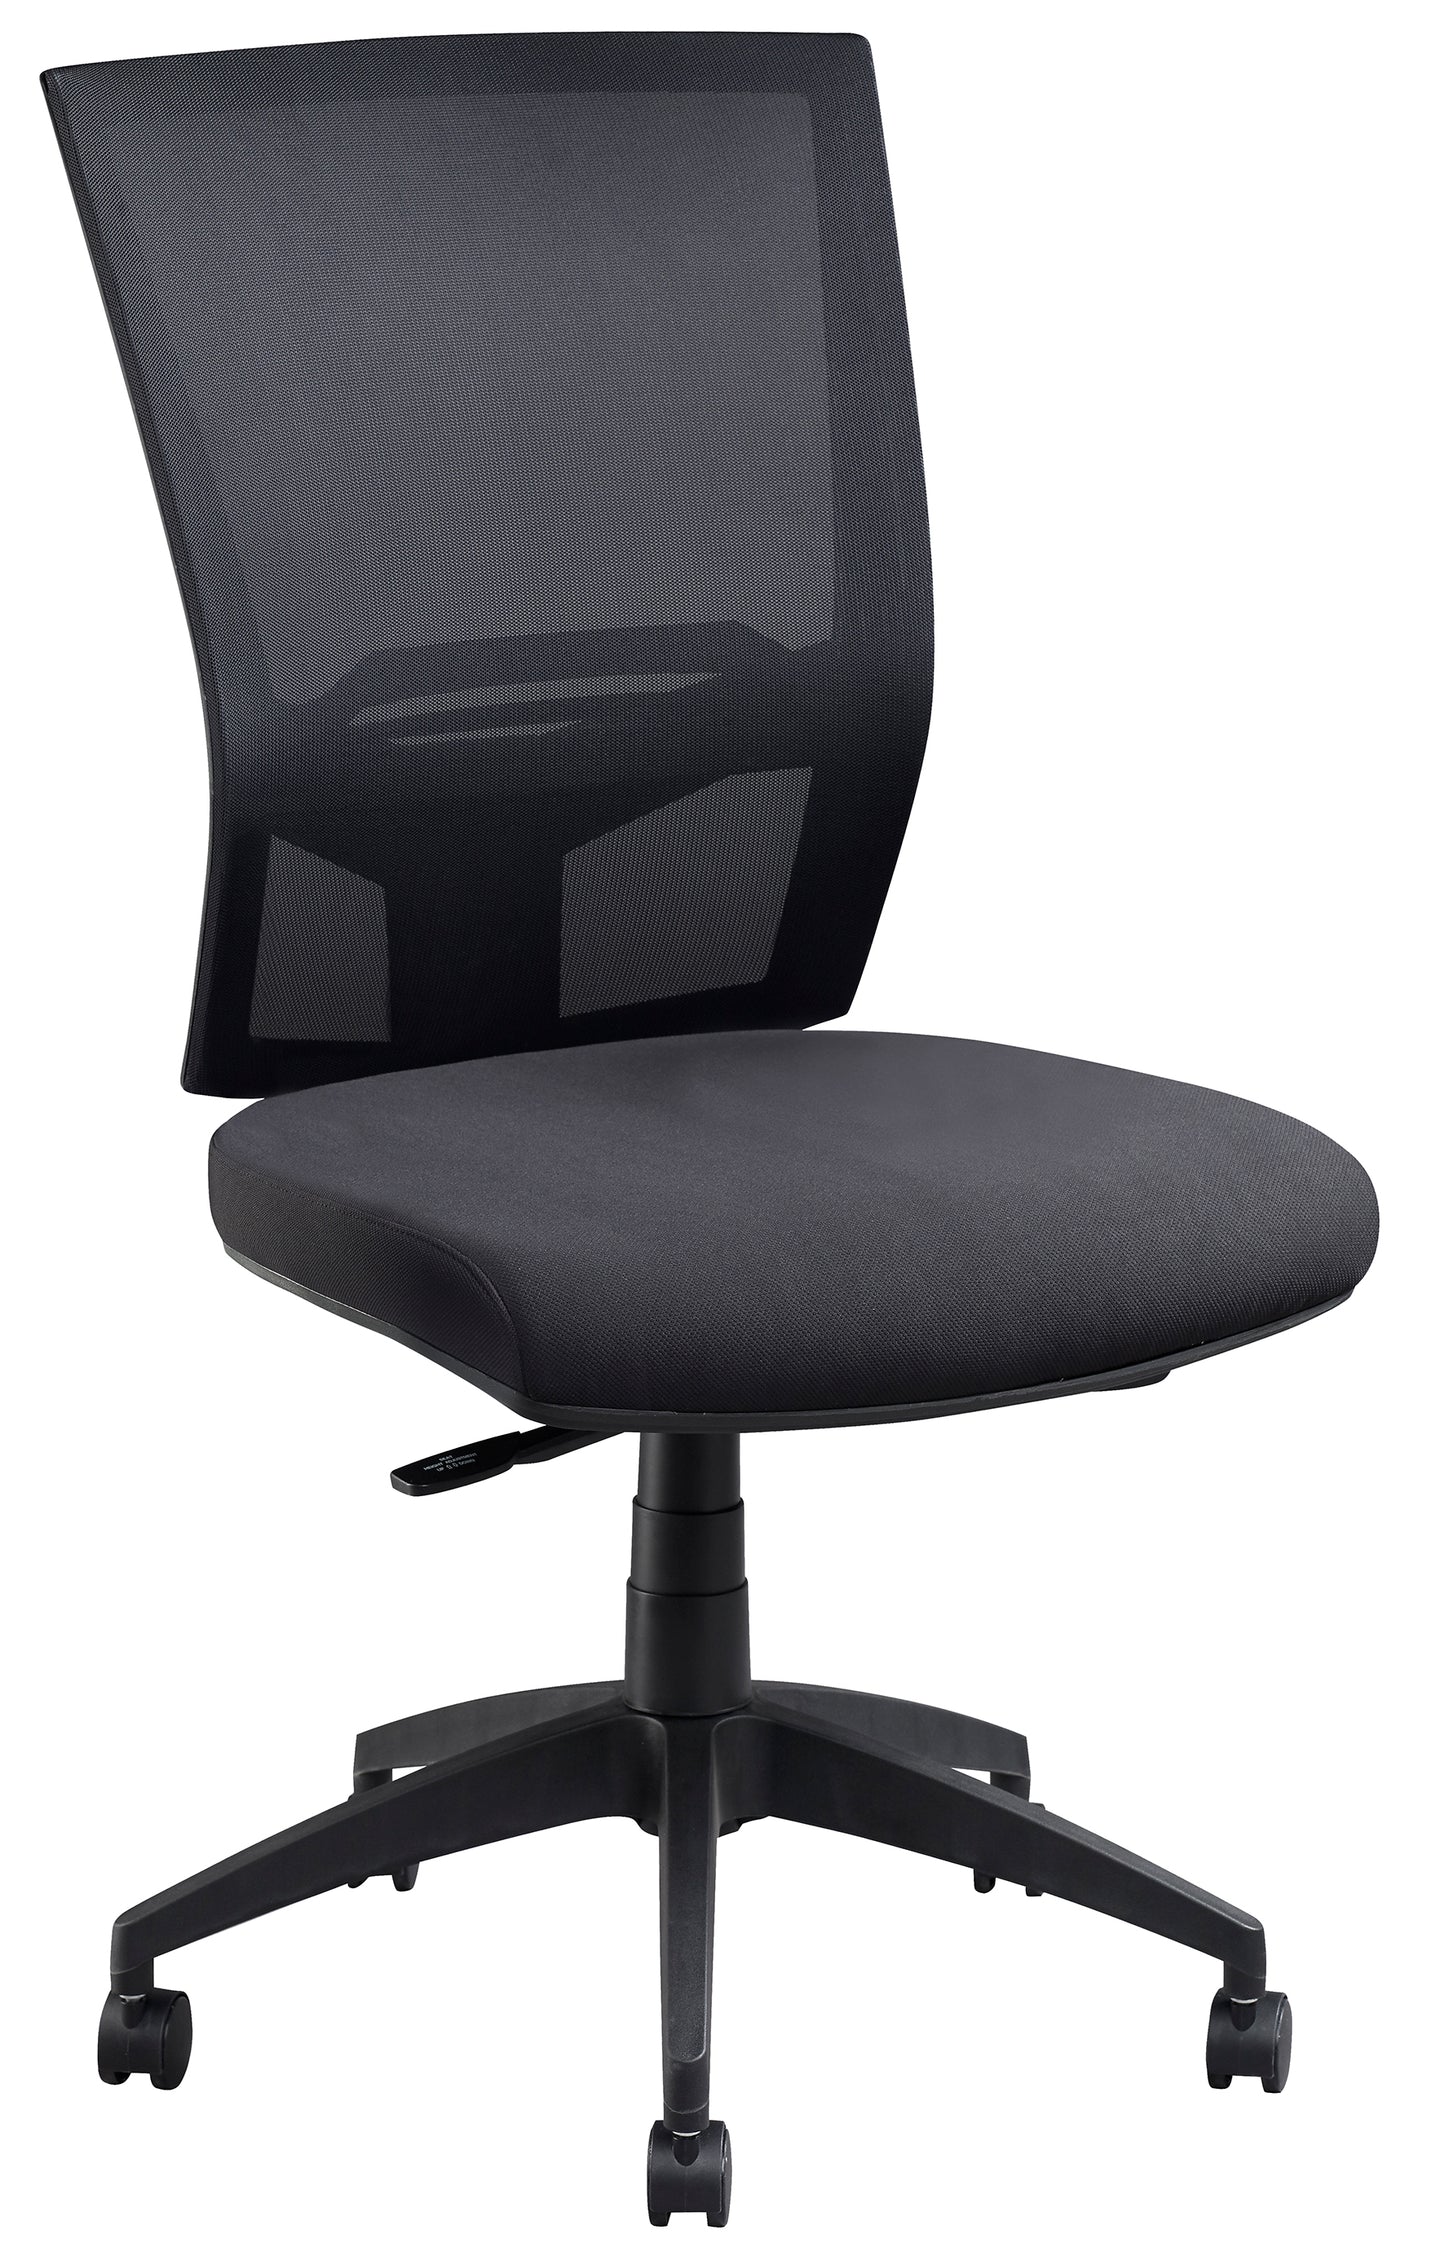 Chair - Advance Air Plus